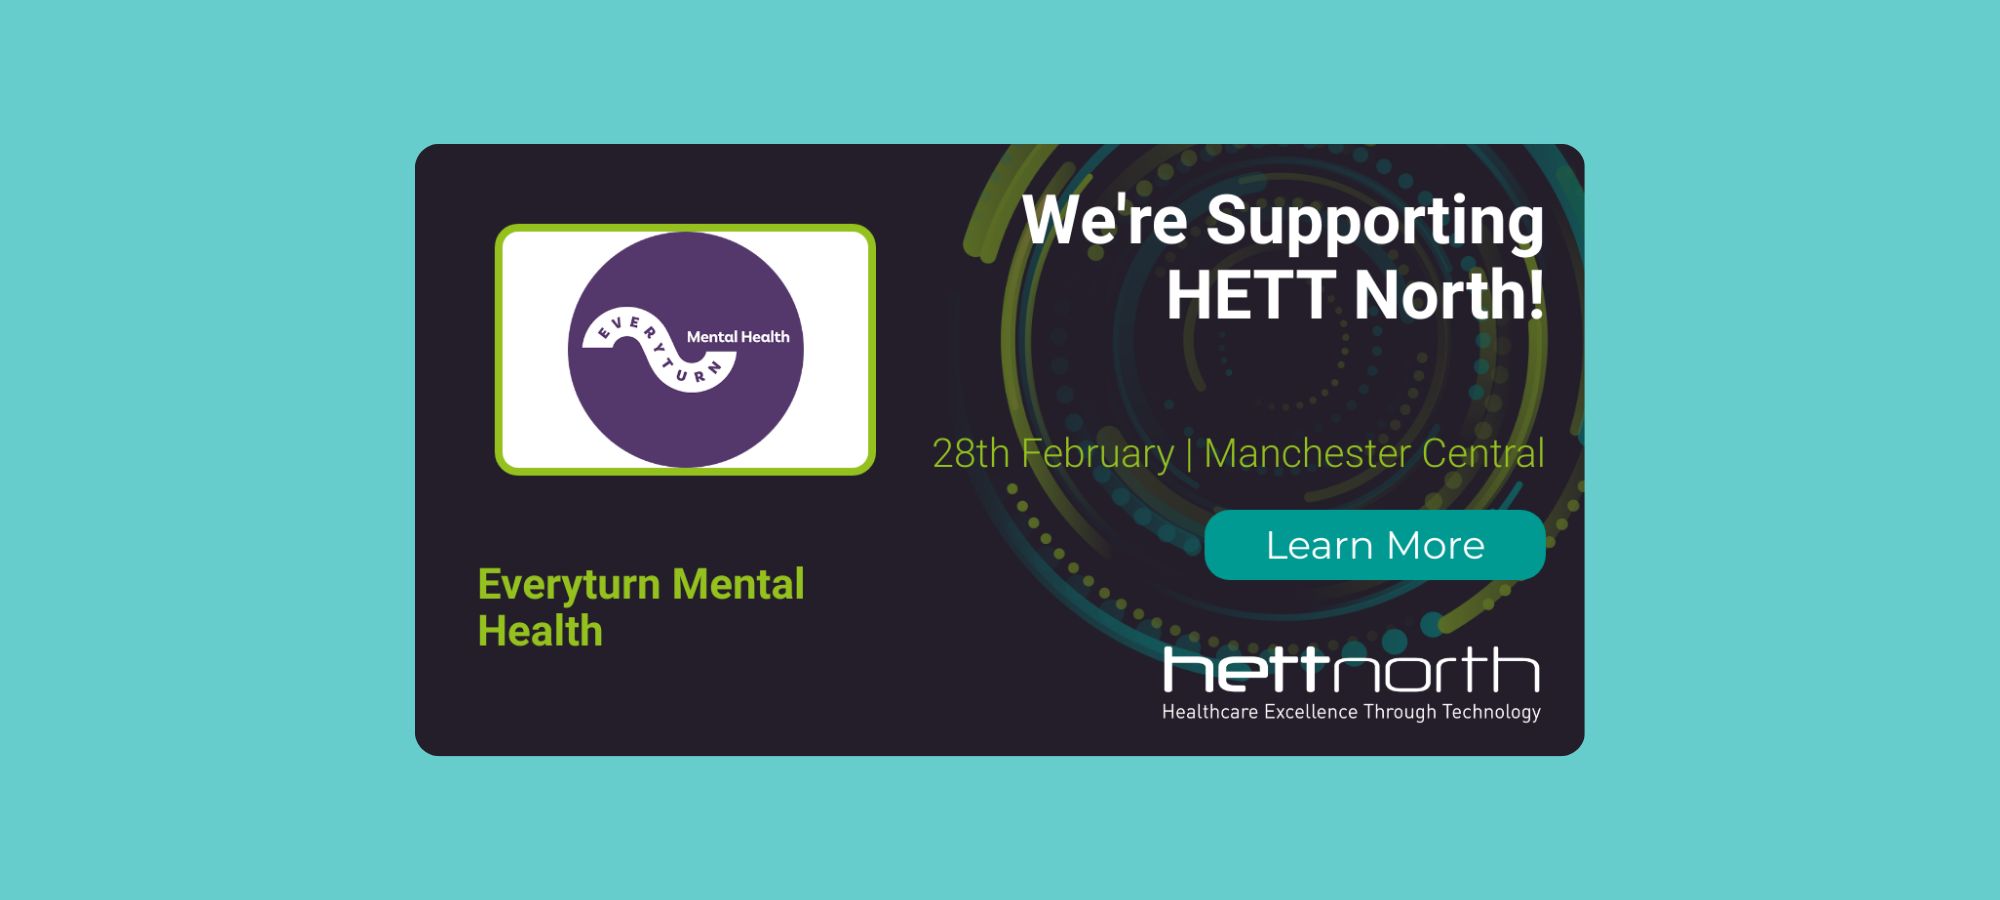 We're supporting HETT North